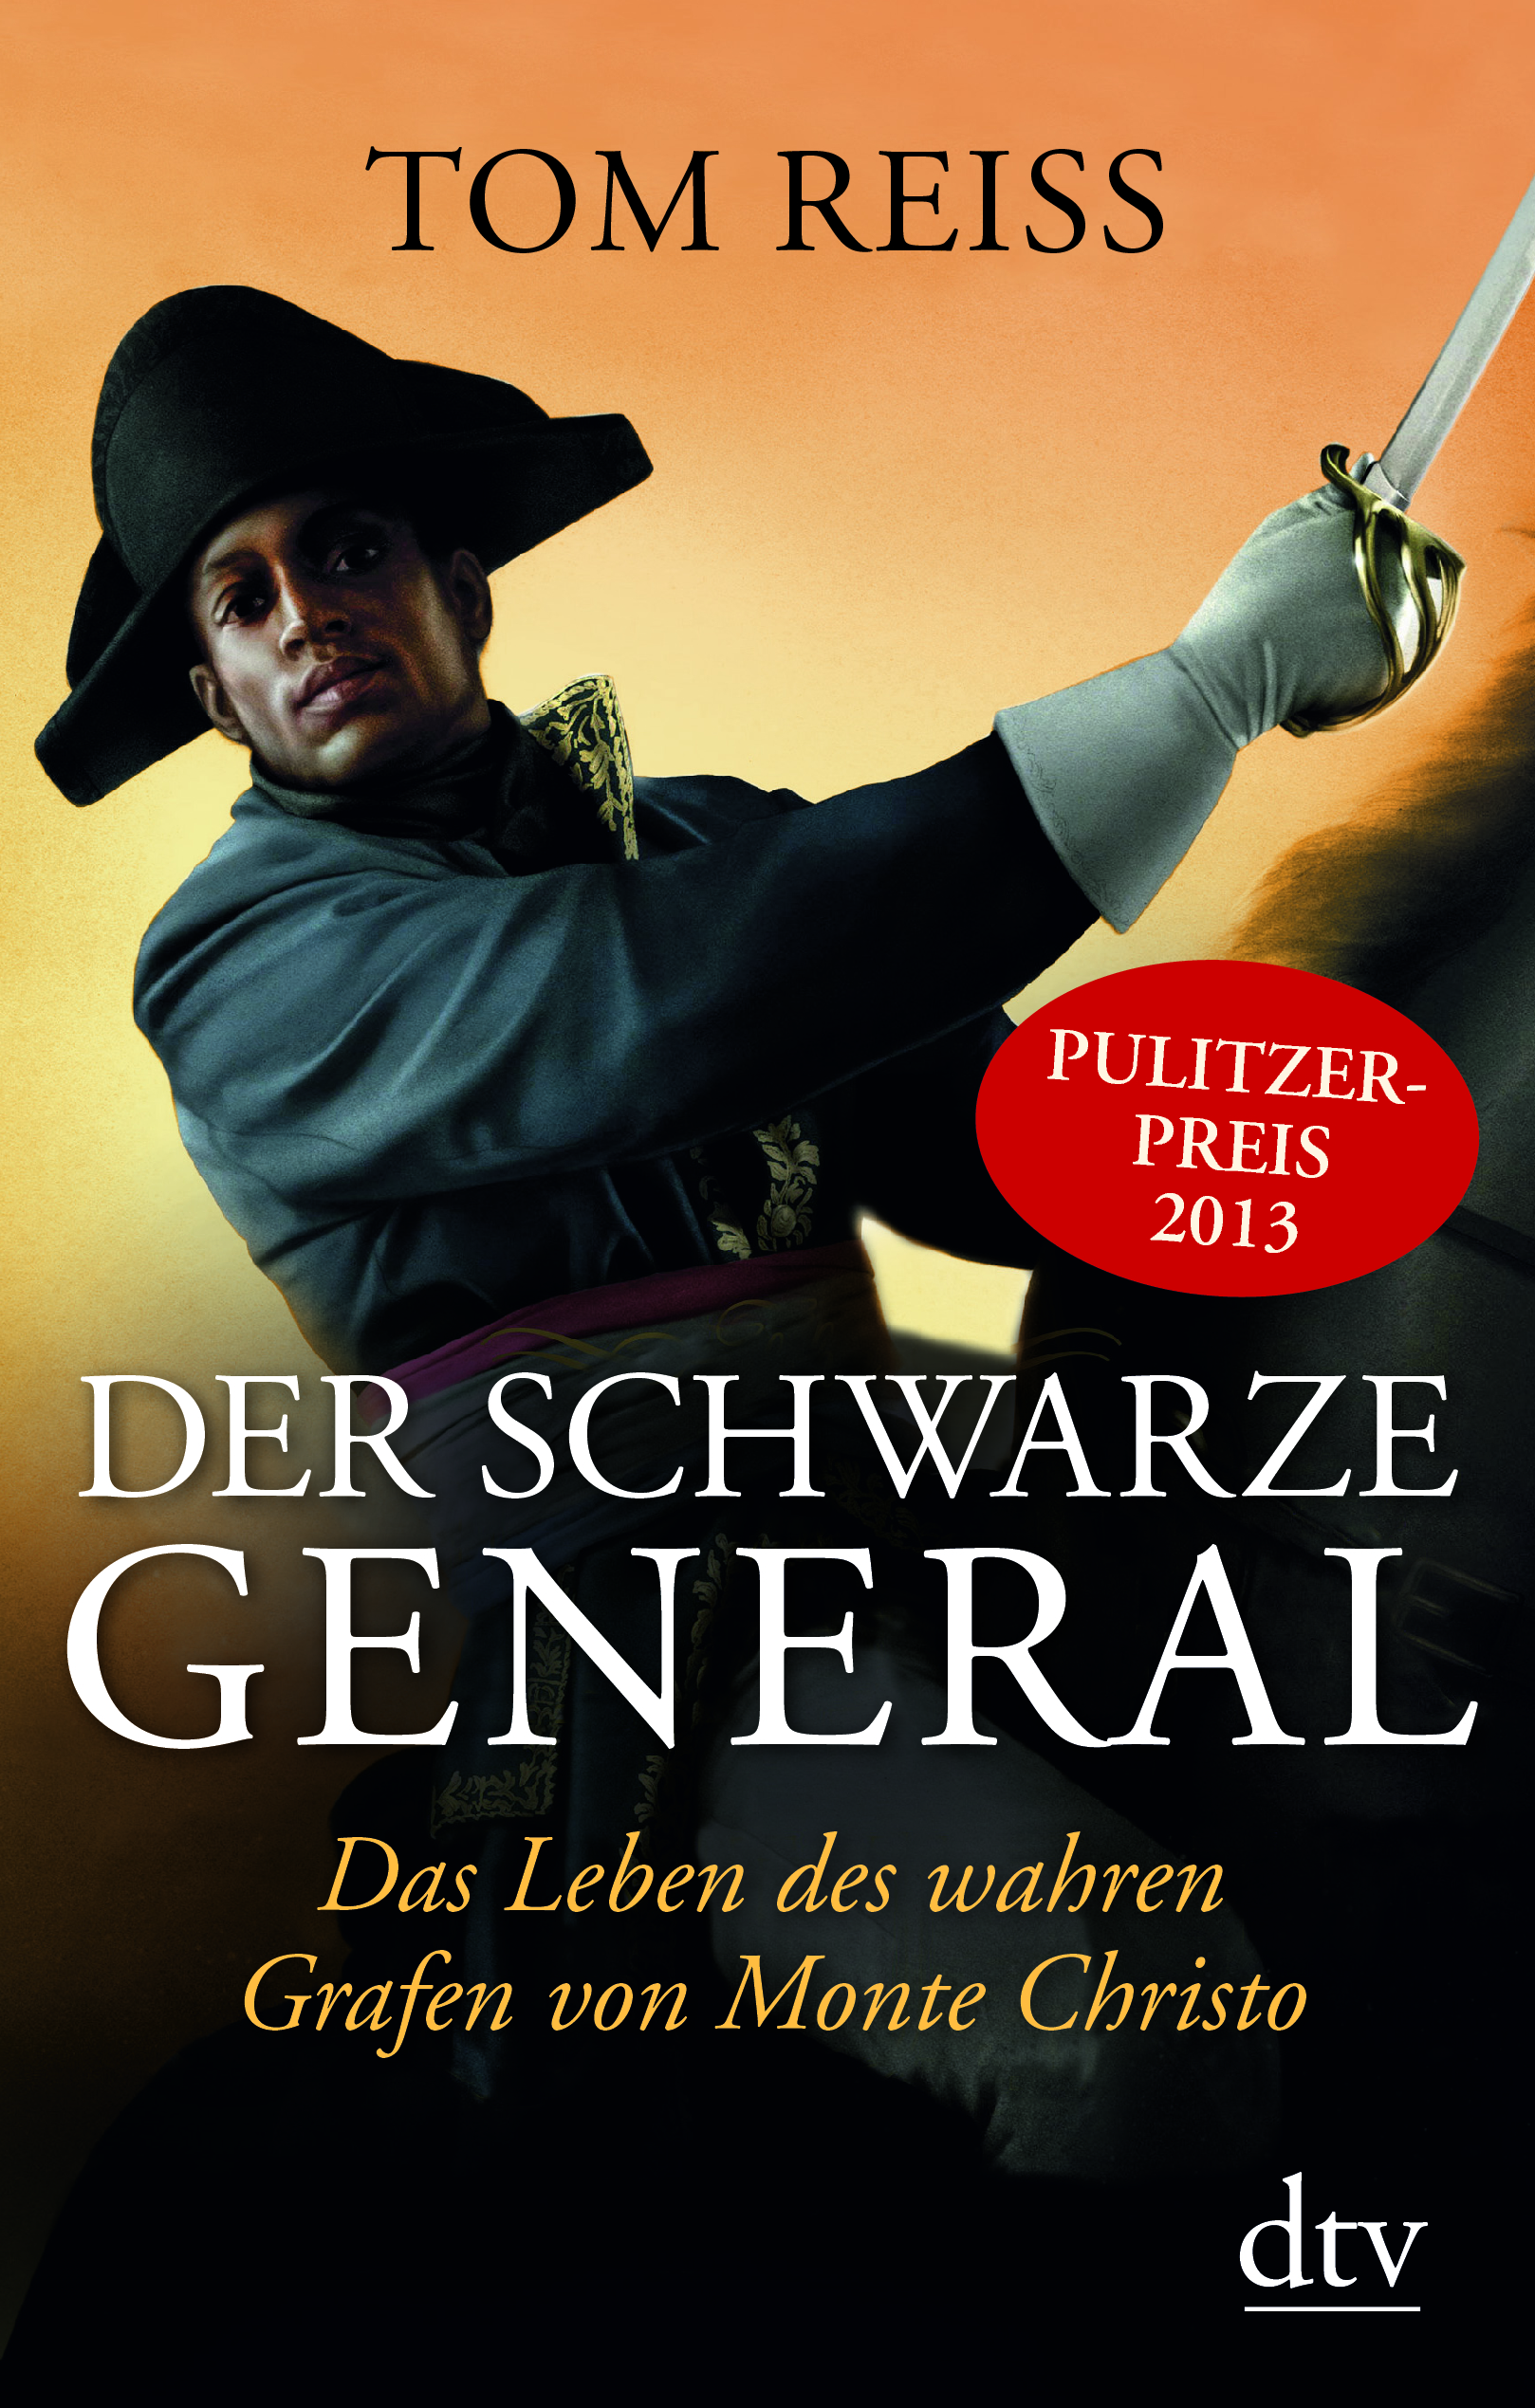 German Cover.jpg